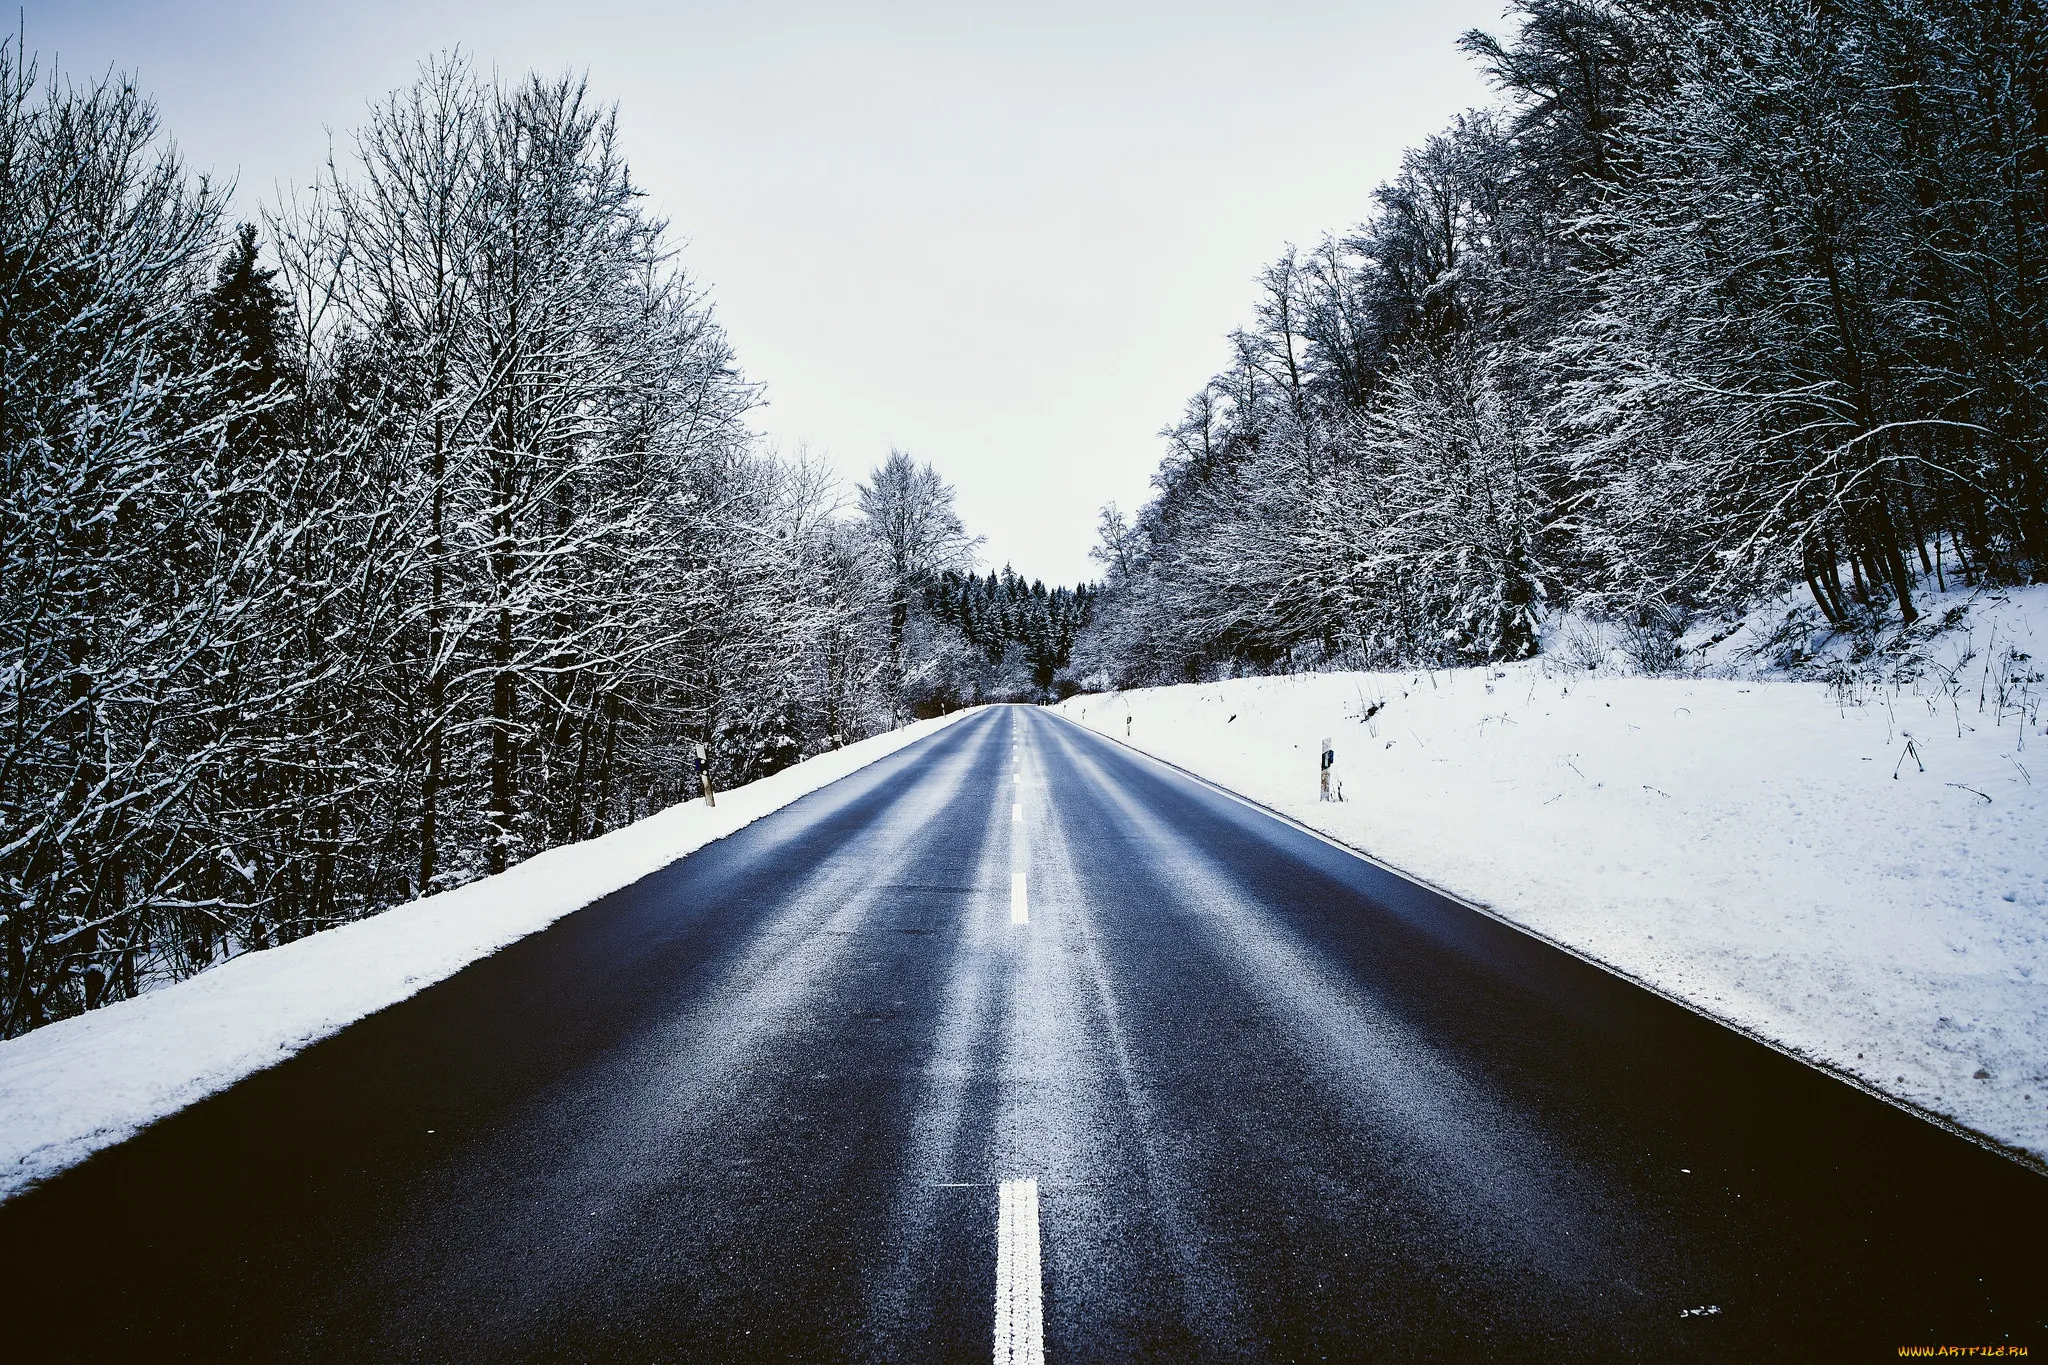 Тема зимней дороги. Зимняя дорога. Заснеженная дорога. Трасса зима. Зимняя дорога в лесу.